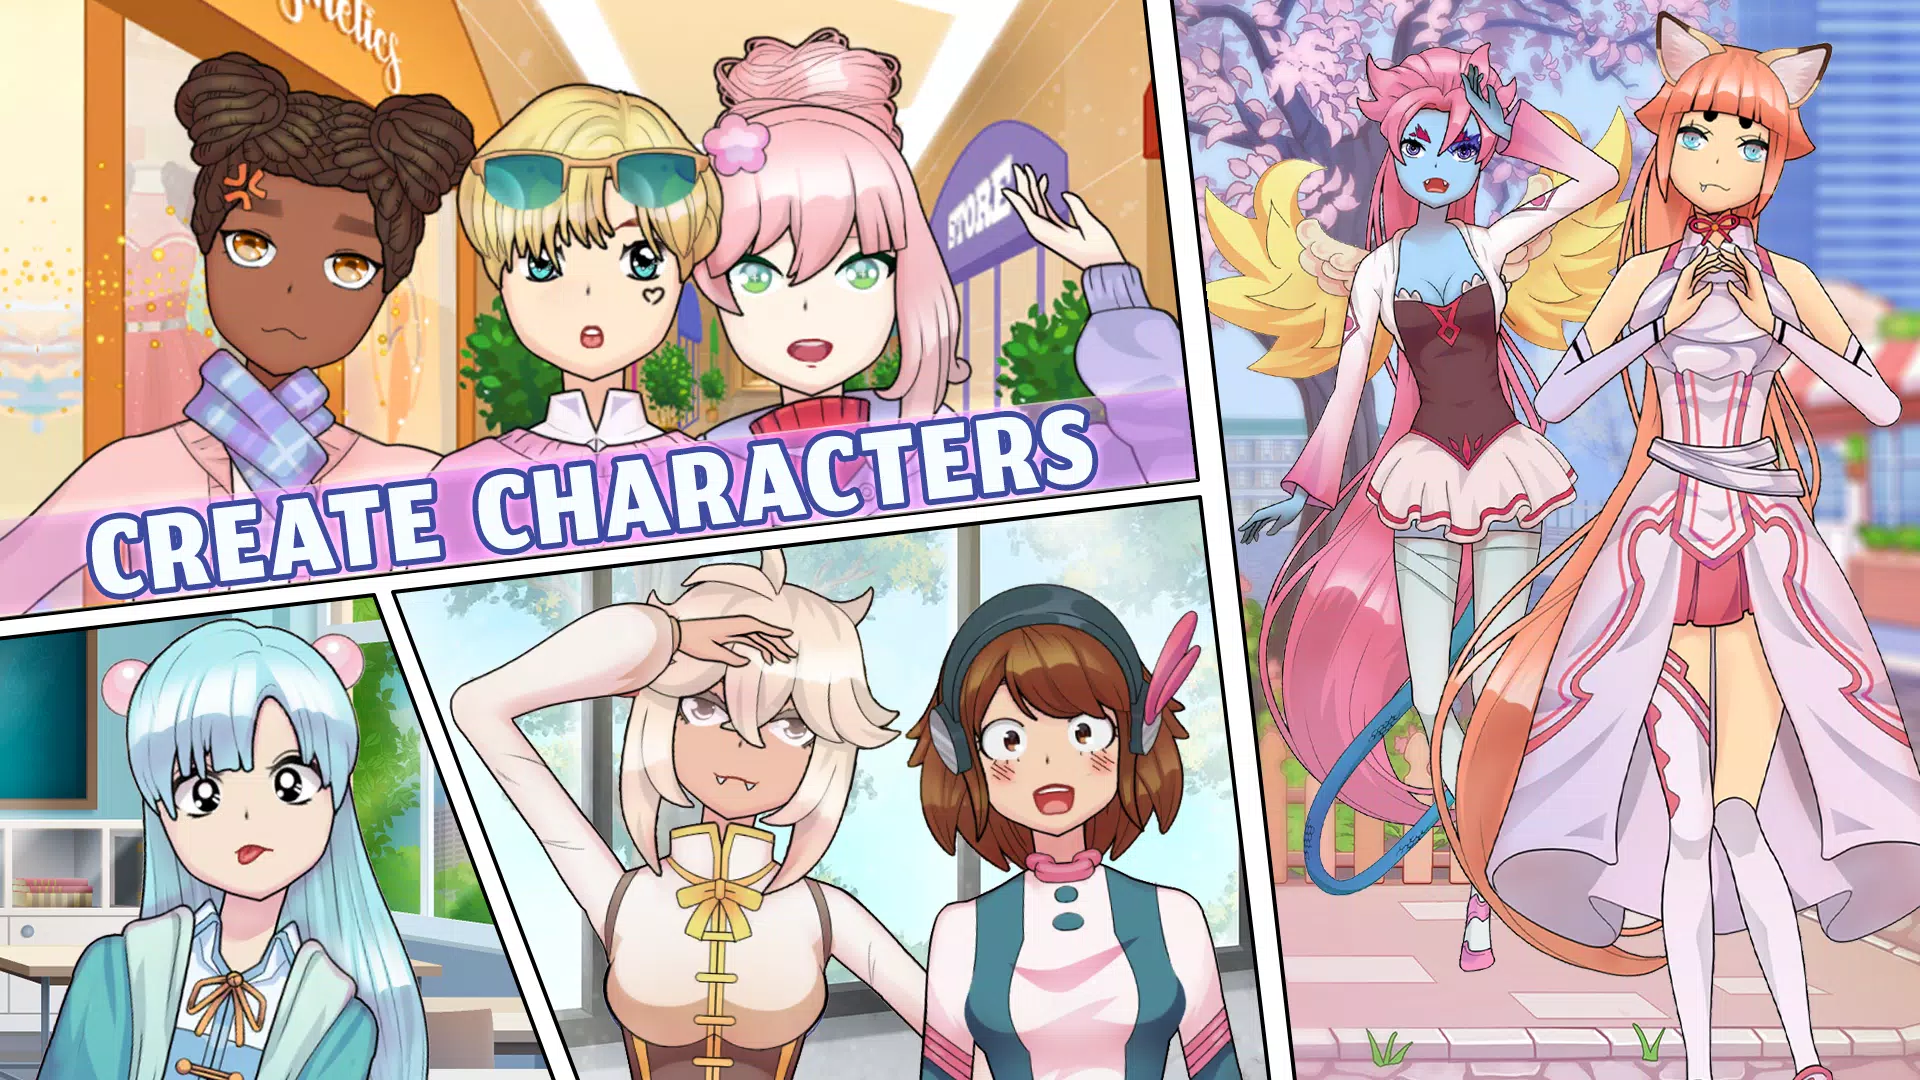 Jogos de Vestir Bonecas Anime – Apps no Google Play